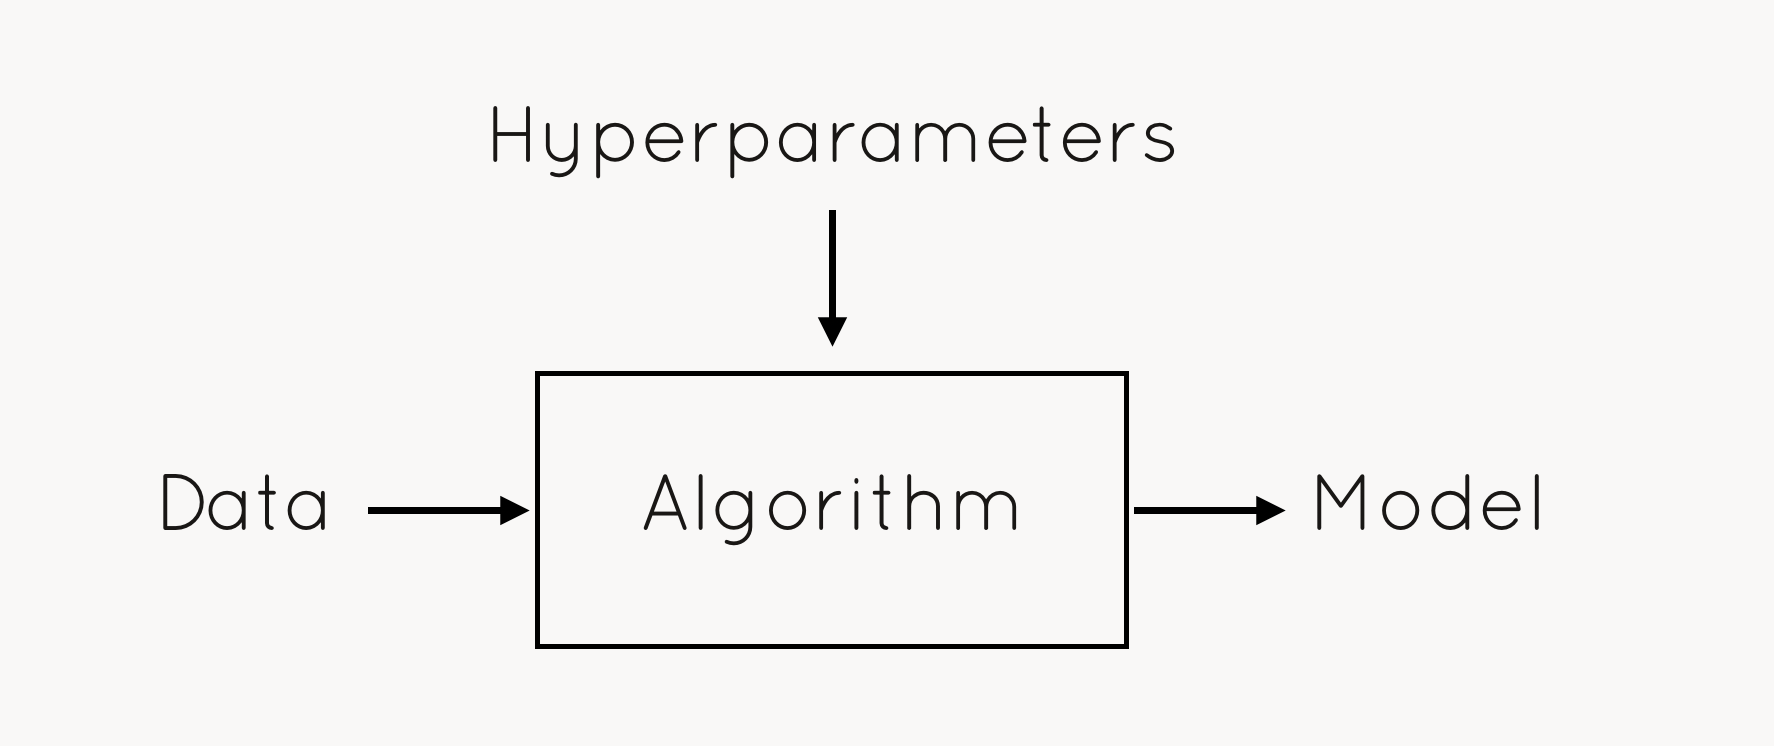 Data + hyperparameters in algorithm -> model